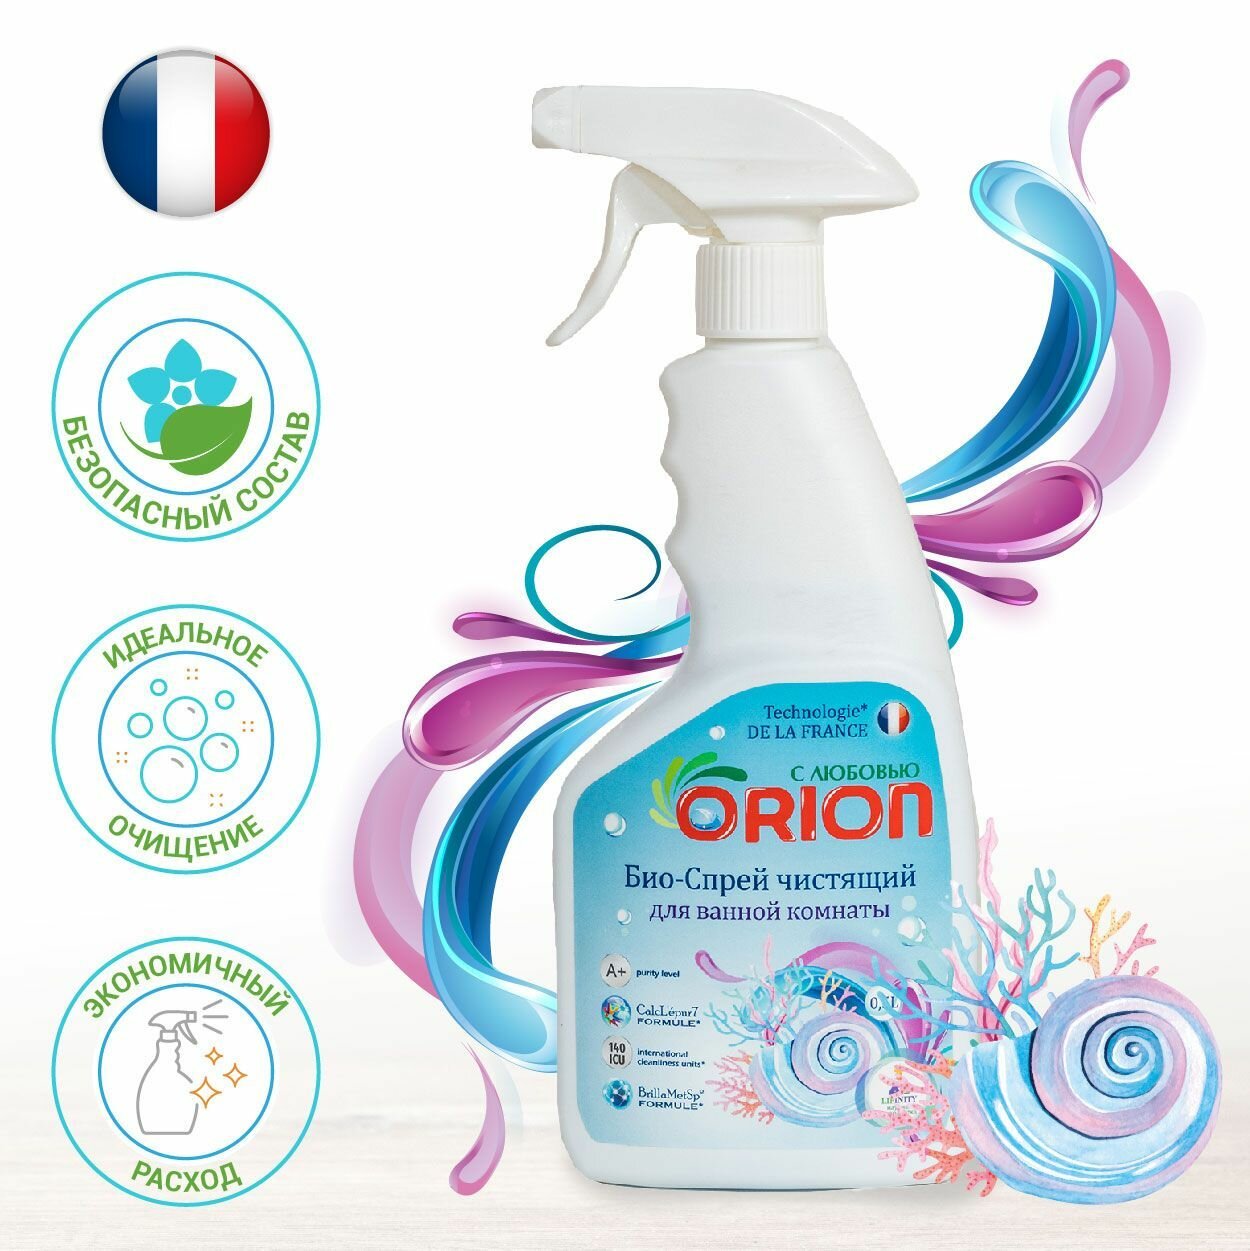 Универсальный Био спрей чистящий для ванной комнаты ORION, для сантехники, кафеля, акриловых/кухонных/бытовых поверхностей / Чистящеее средство 500 мл